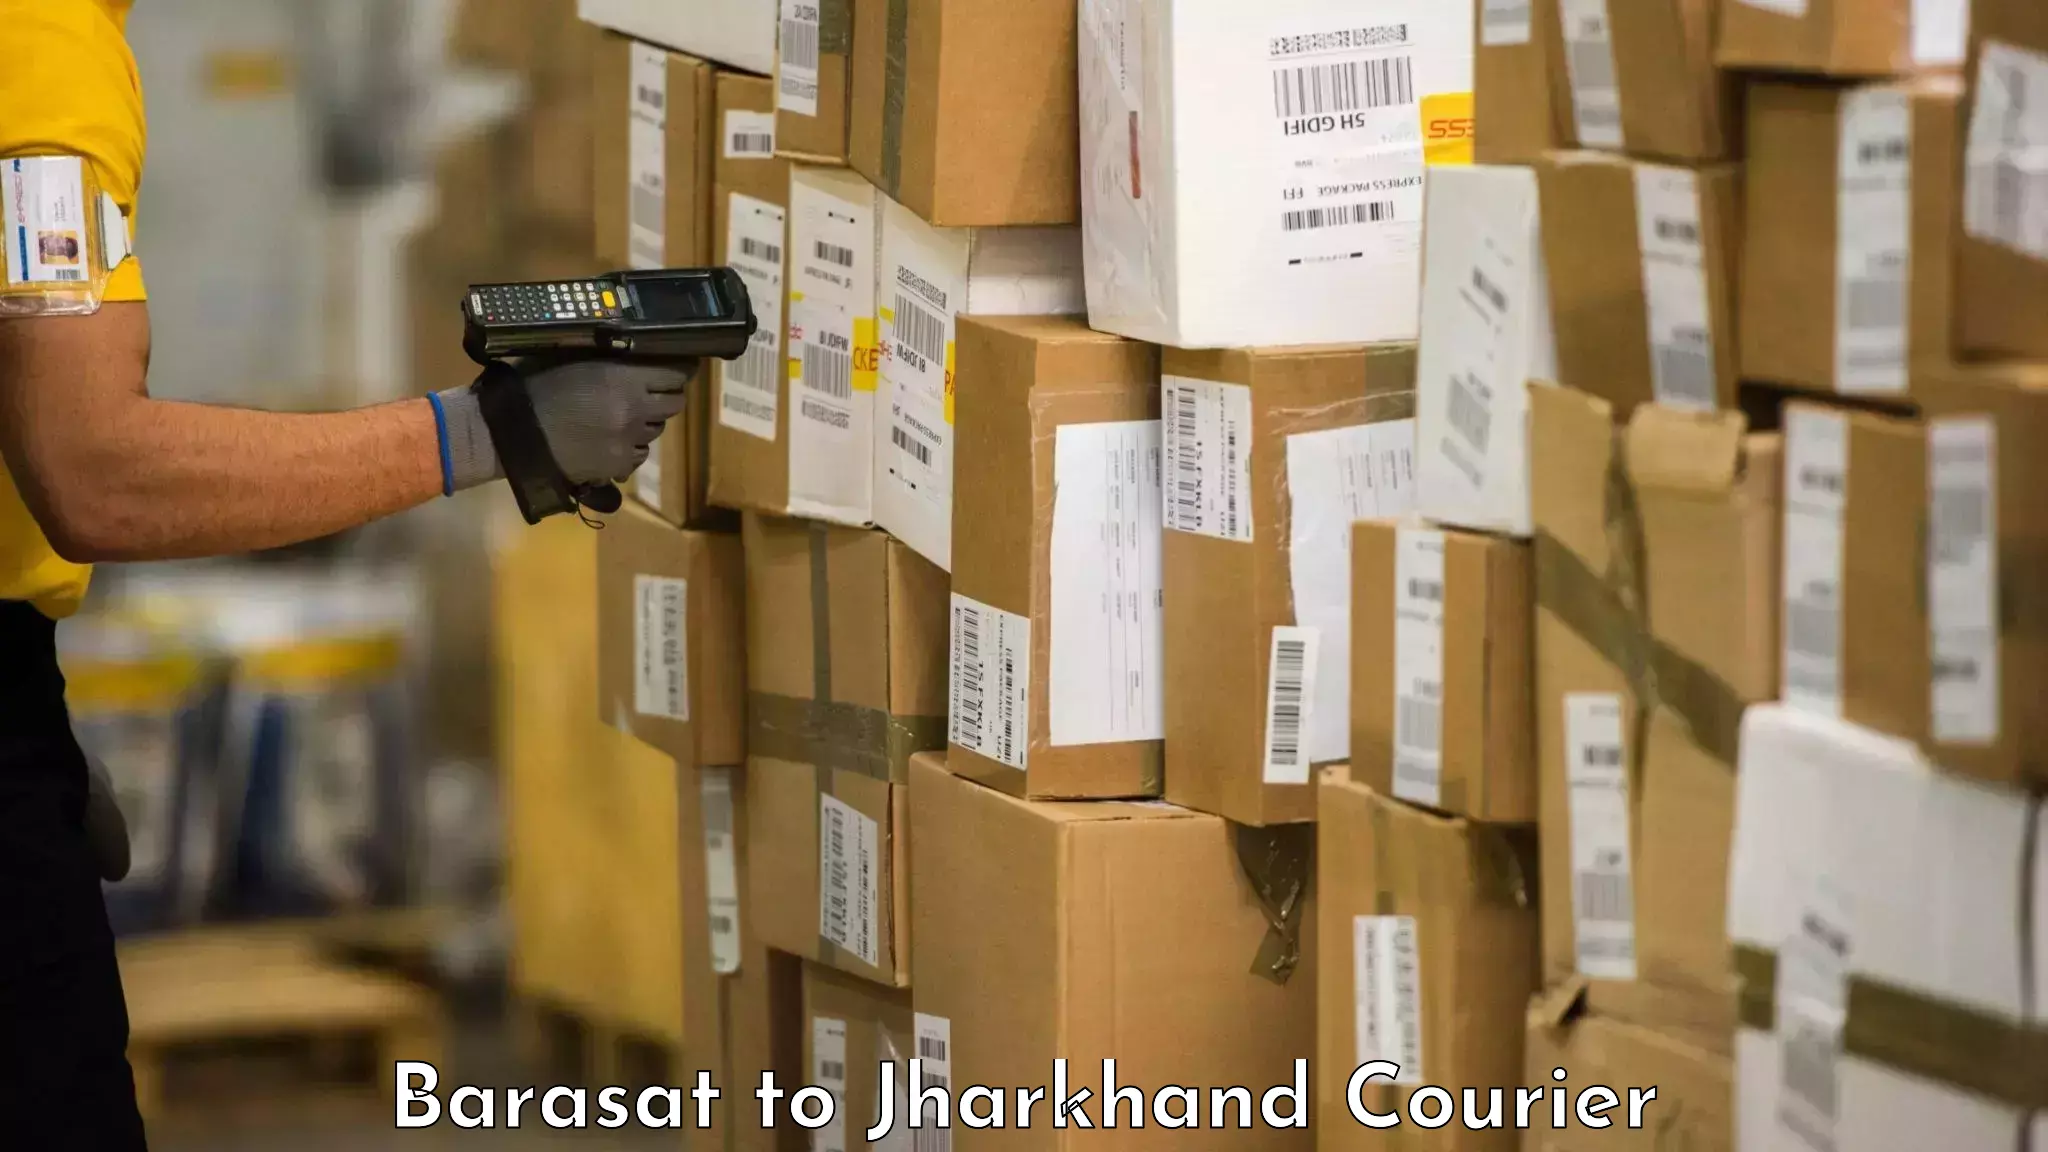 Luggage transit service Barasat to IIT Dhanbad